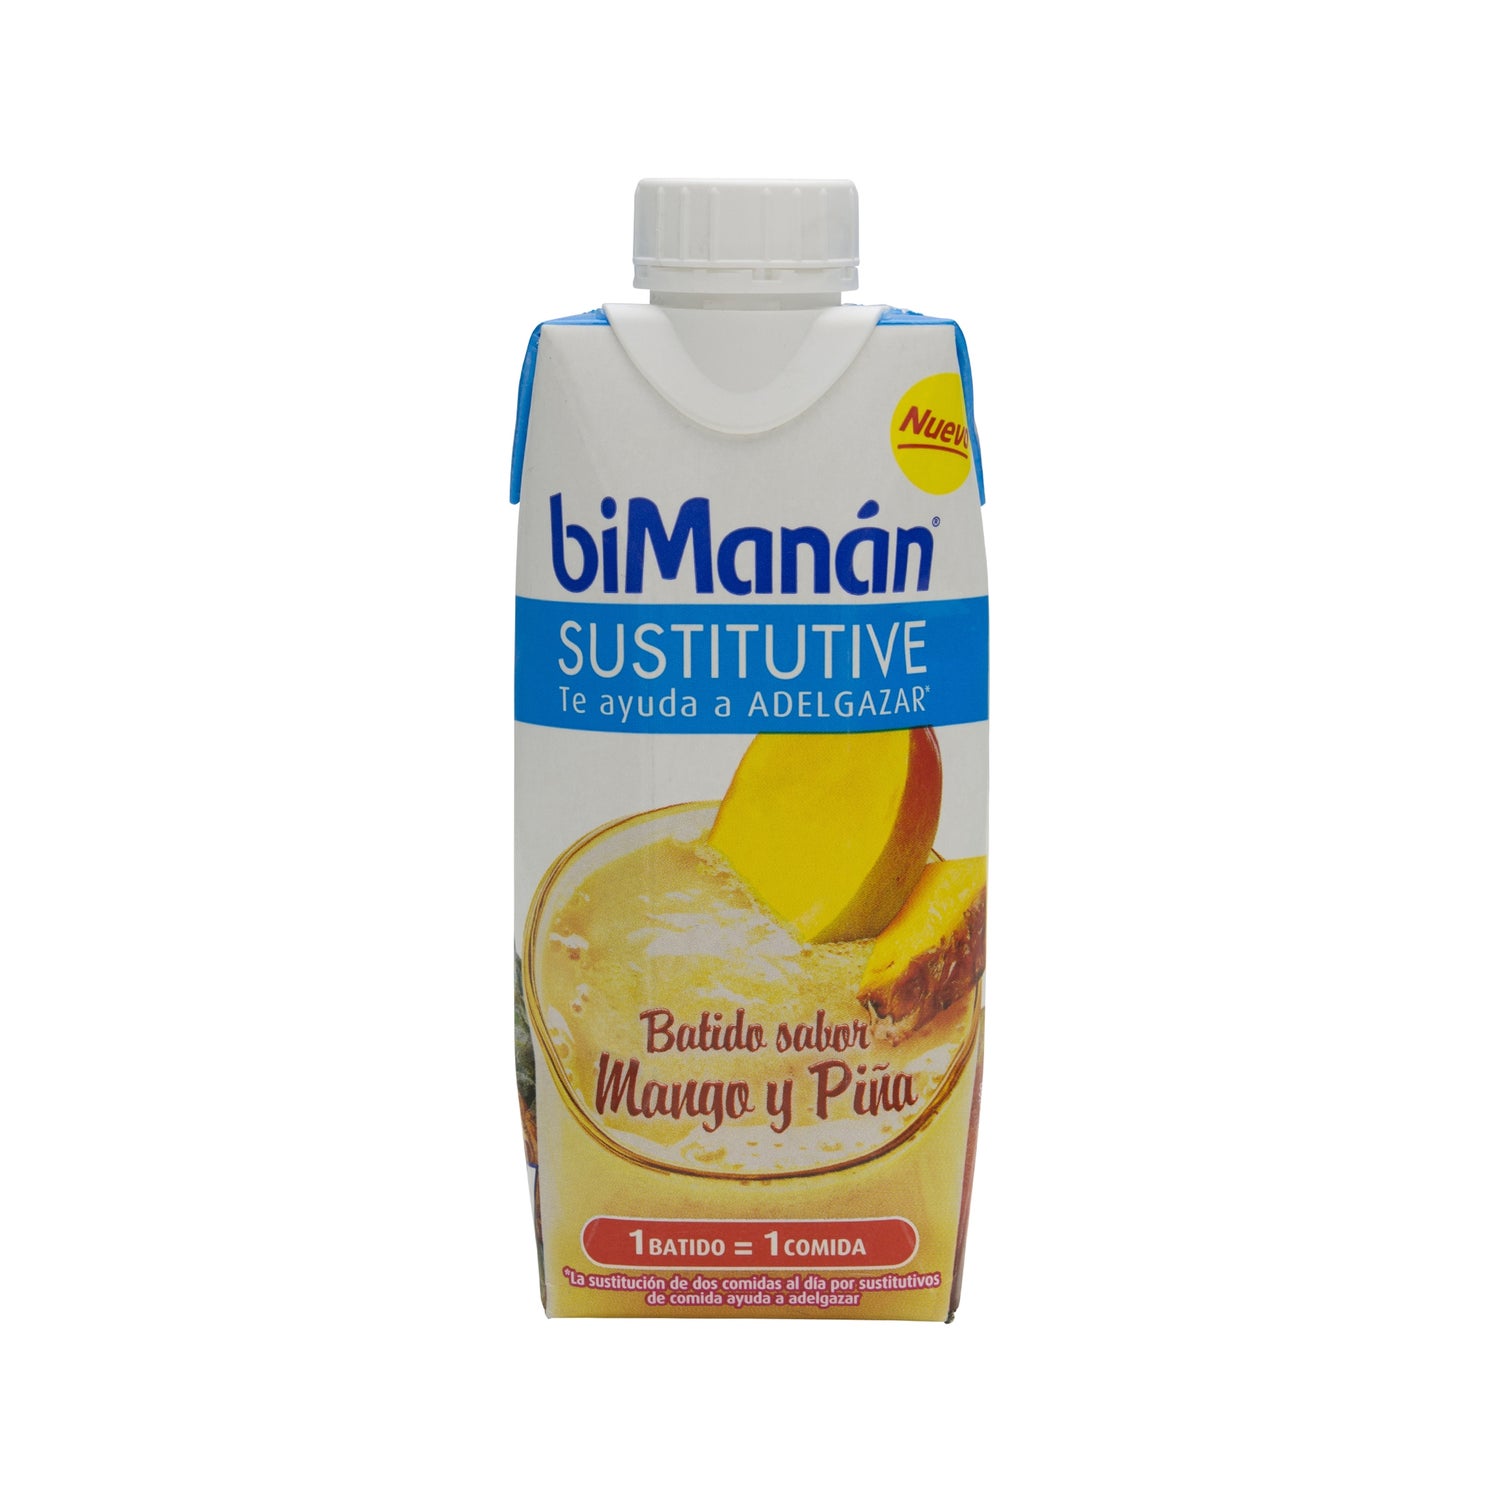 biman n sustitutive batido sabor mango y pi a 330ml